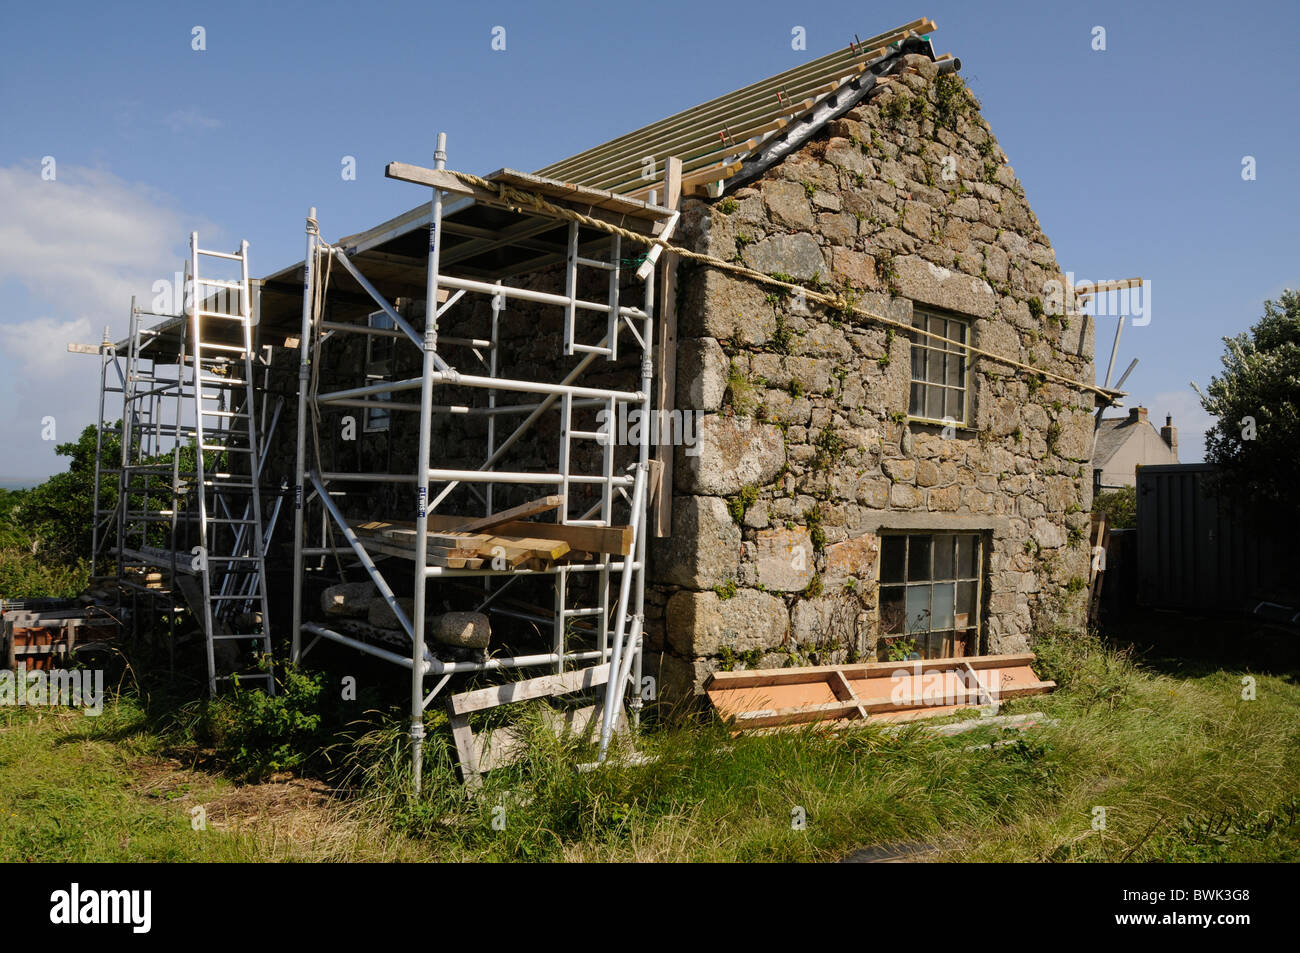 Ein Haus restauriert als Teil des Herzogtums Cornwall Bulidling Projekte Pläne auf Extrameldung Insel, Isles of Scilly, Großbritannien Stockfoto